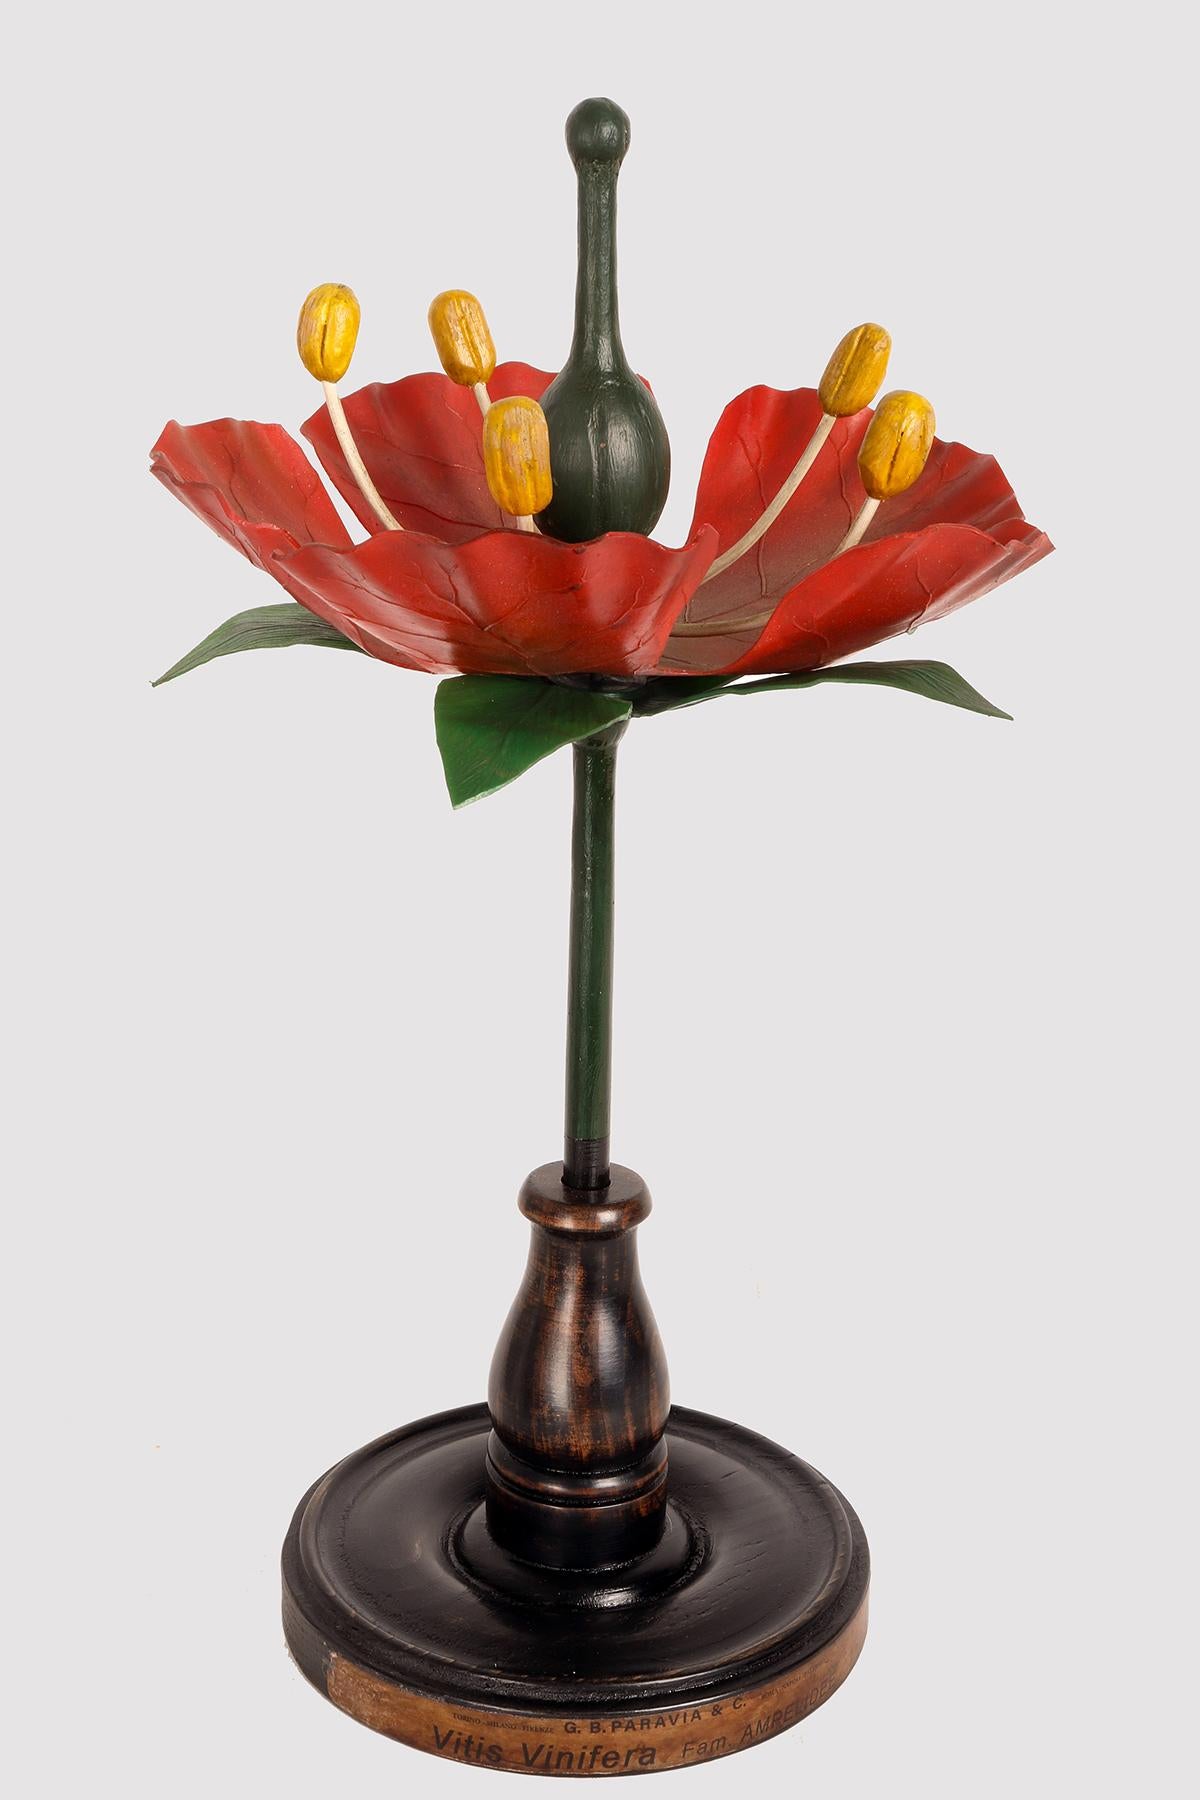 Ein botanisches Modell für den didaktischen Gebrauch, das eine rote Weintraubenblüte, Vitis Vinifera, Anipelidee, darstellt. Hergestellt aus Metall, Papier, Gips, Galalith und Holz. Äußerst detailliert. Paravia, Mailand, Italien, um 1940.